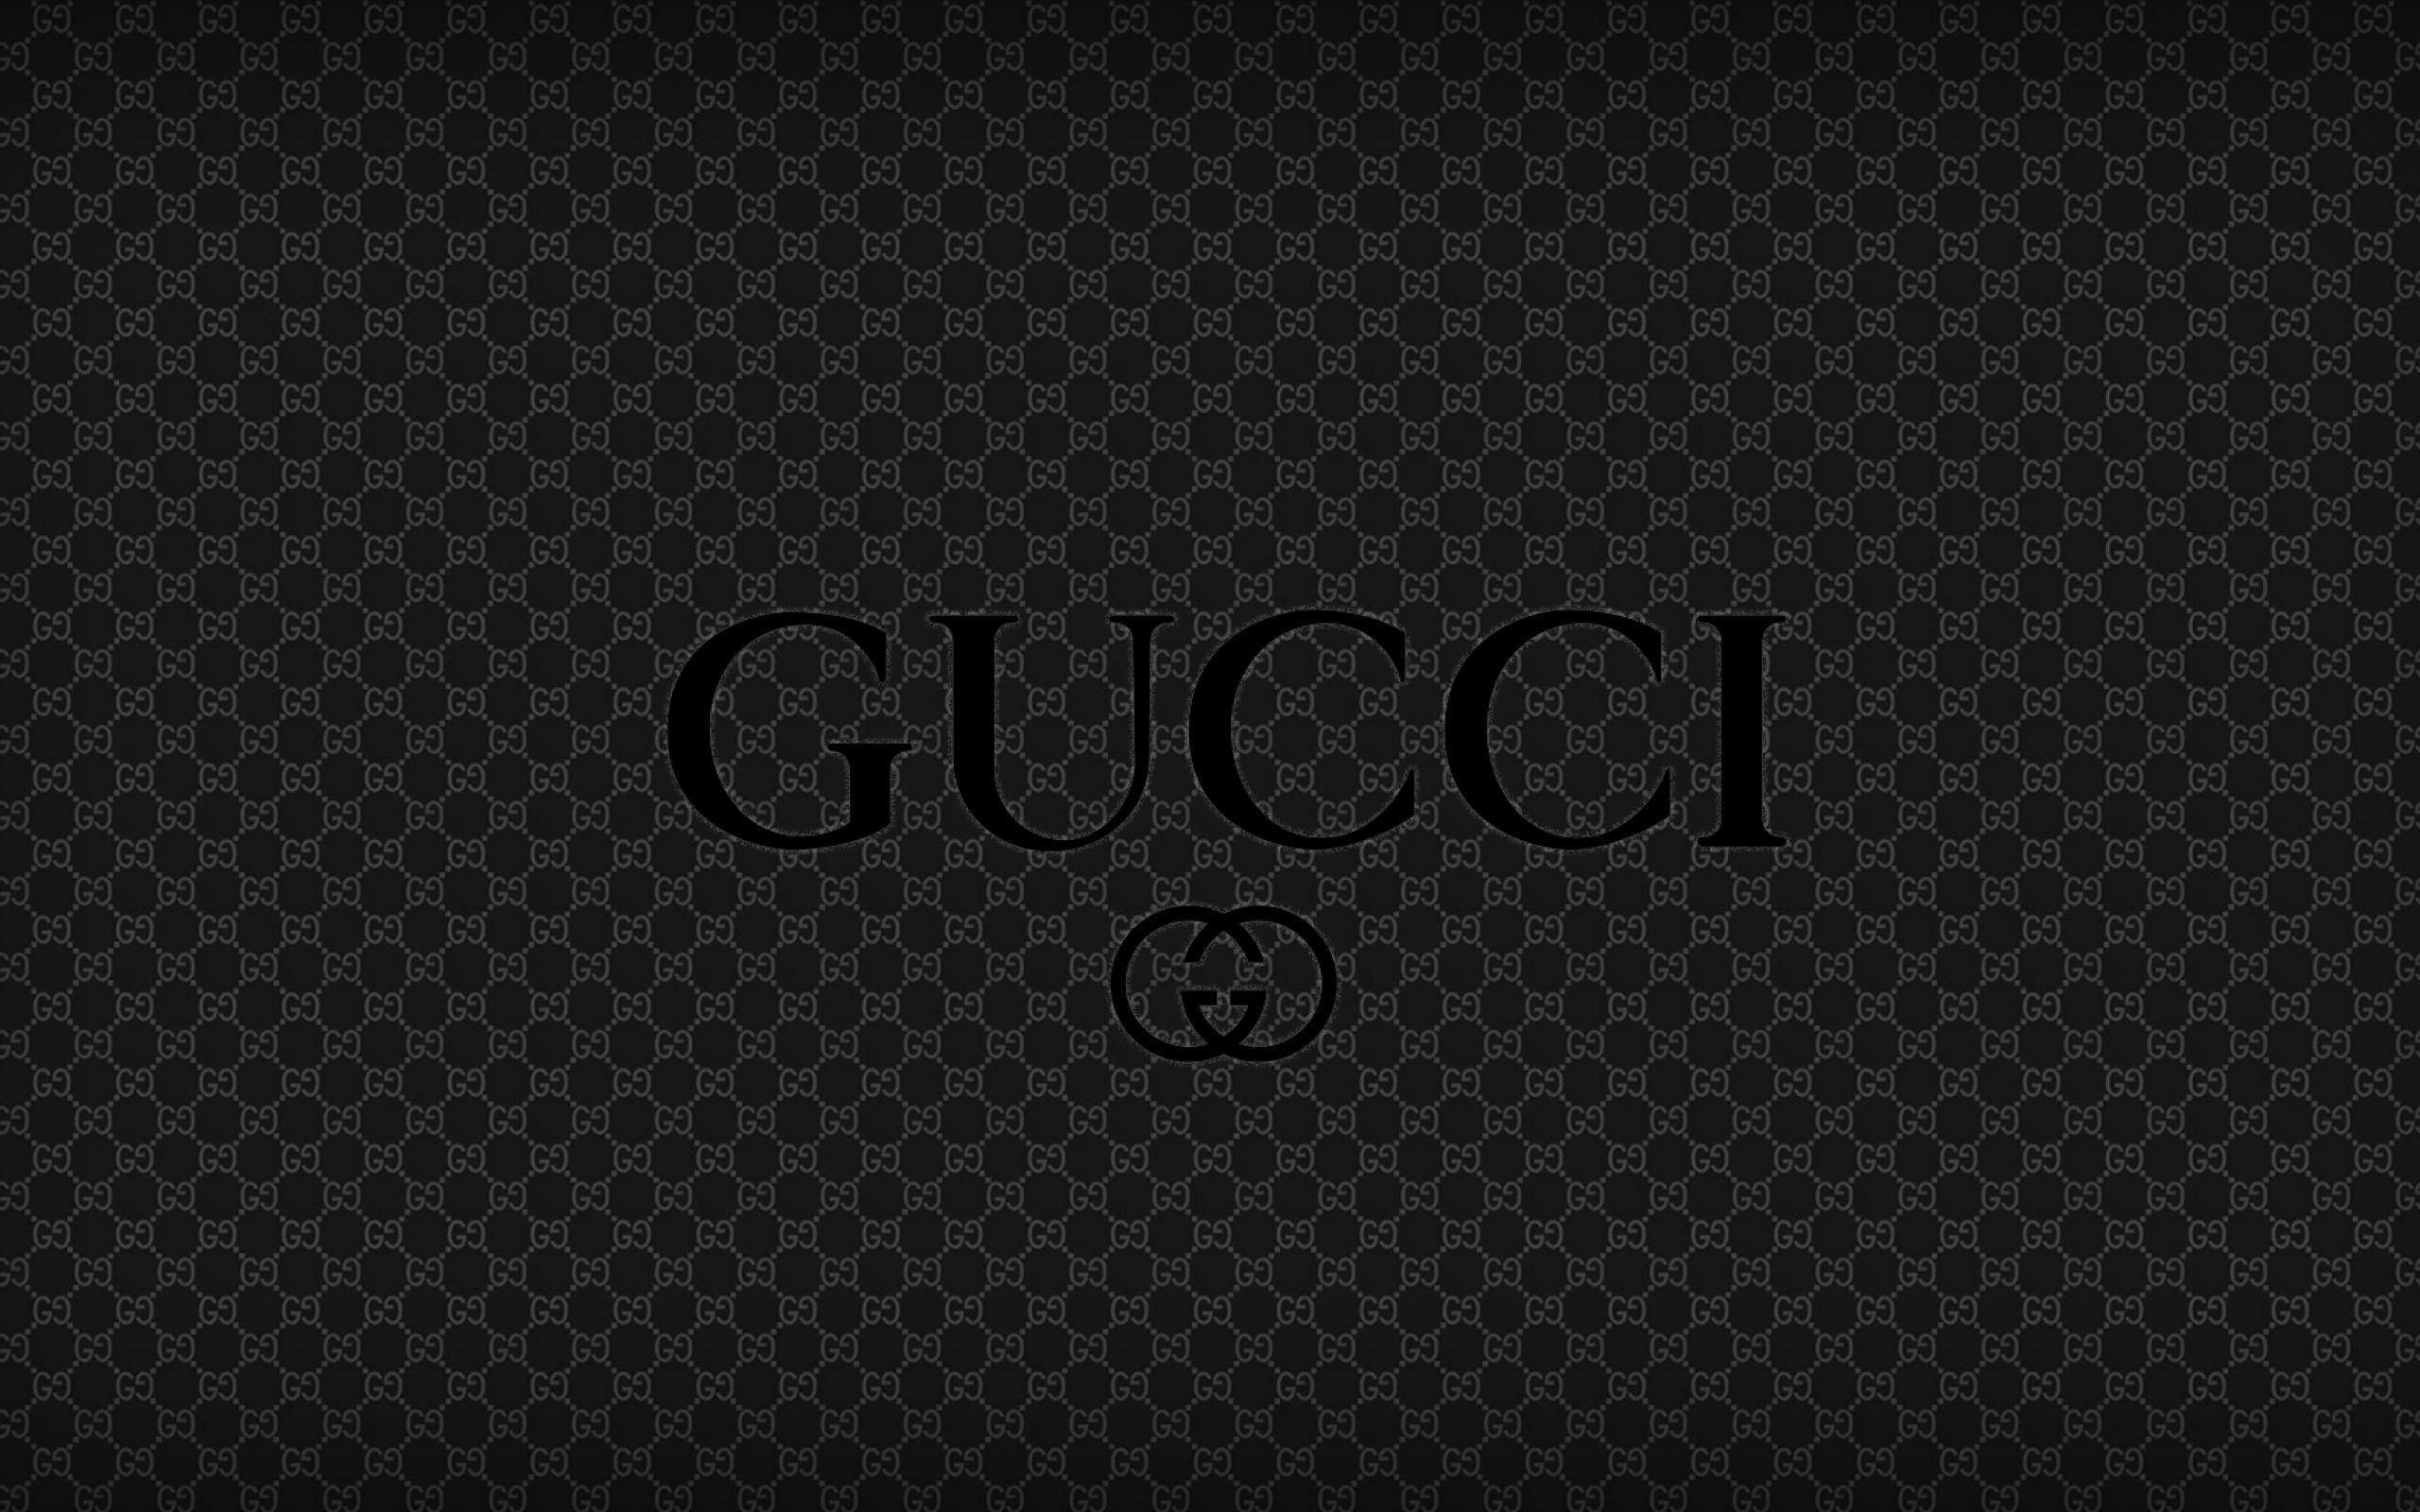 Versace, Louis Vuitton Gucci HD wallpaper